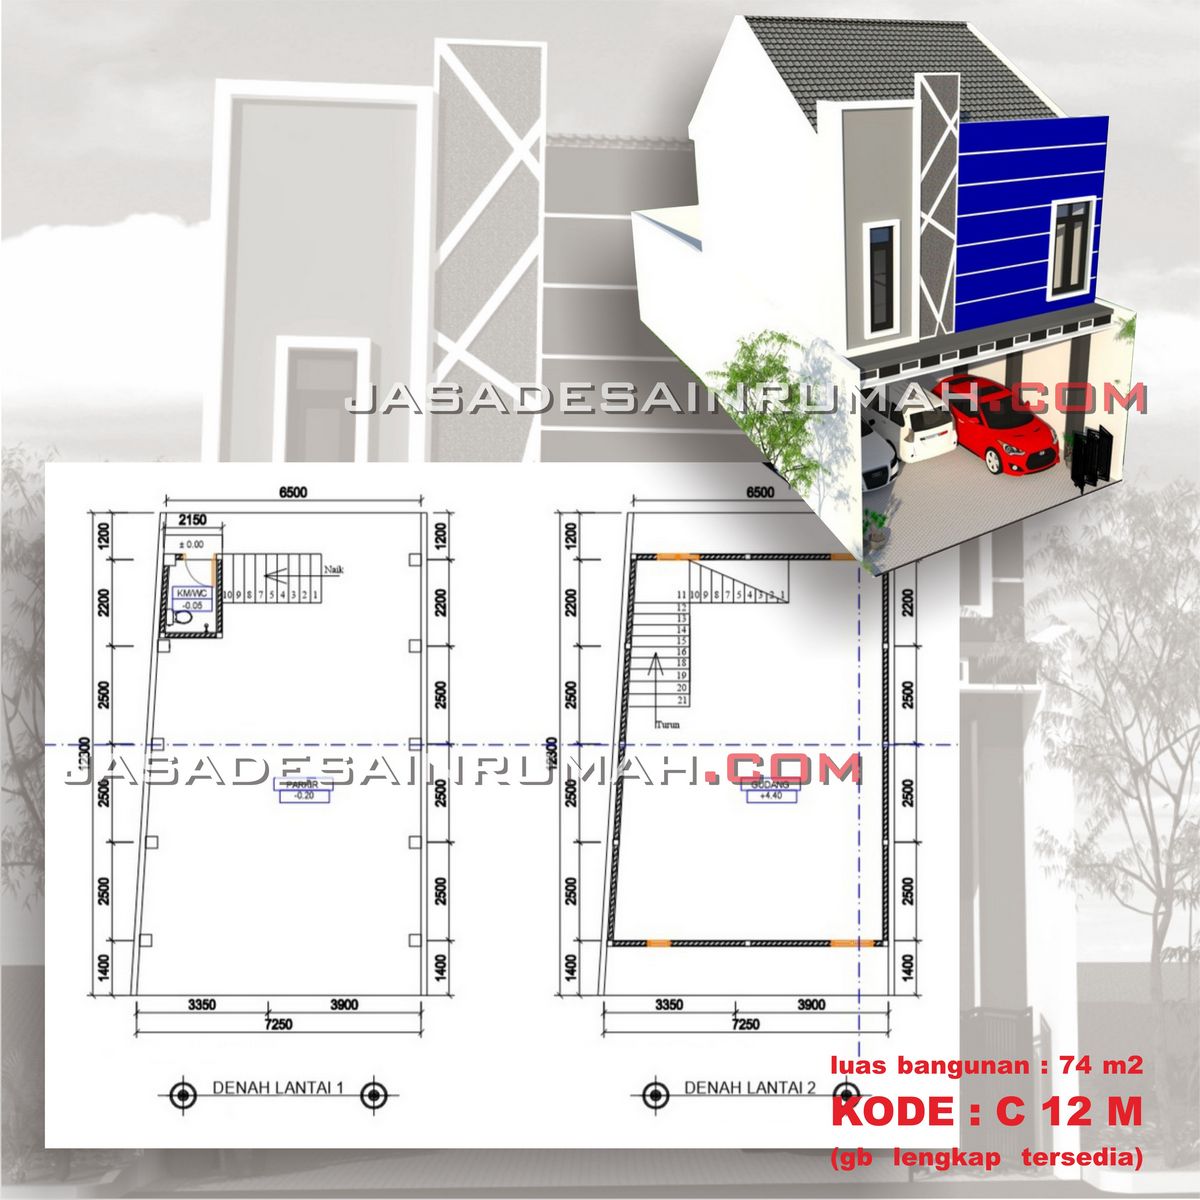 Desain Bangunan Usaha Minimalis Mungil 2 Lantai Lebar 7 Meter Bawah Full Parkir Ruang Fleksibel Jasa Desain Rumah